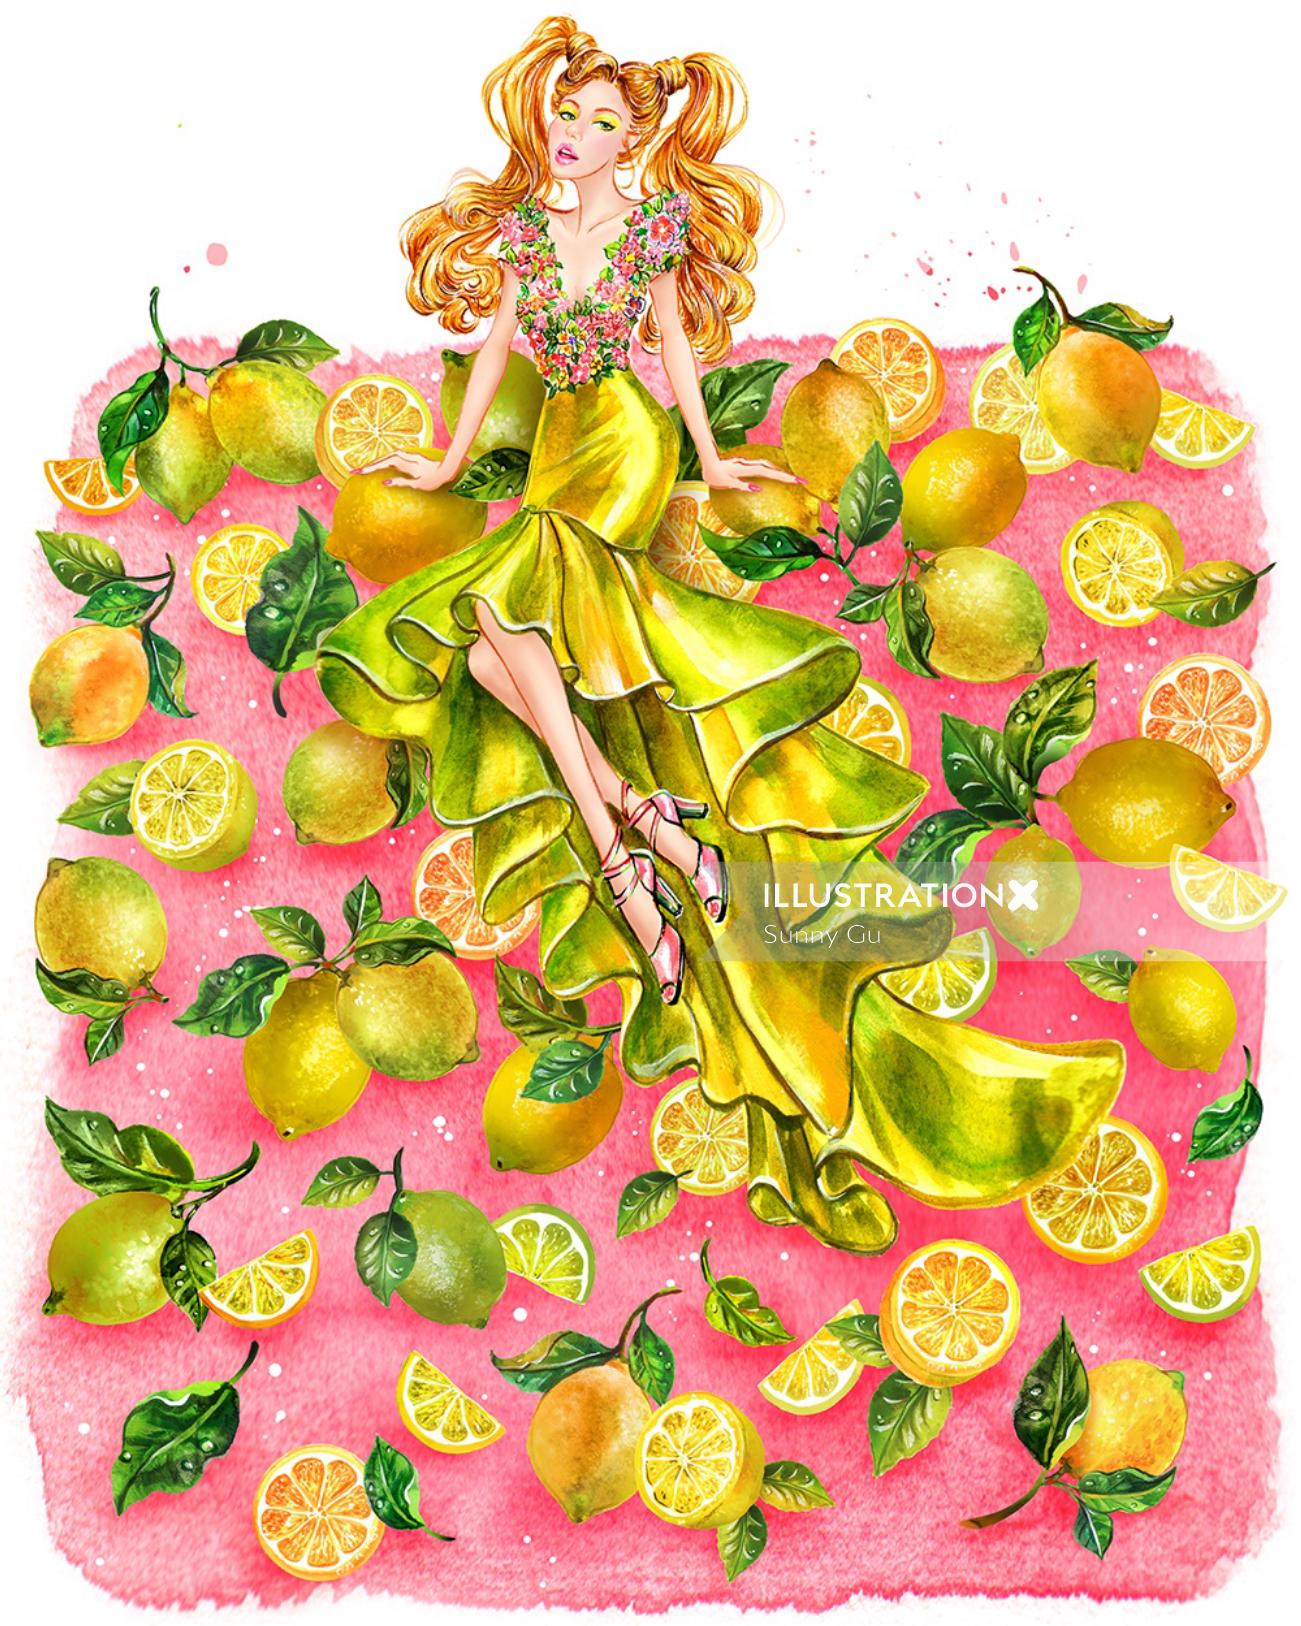 Garota na ilustração de moda vestido de alta costura amarela